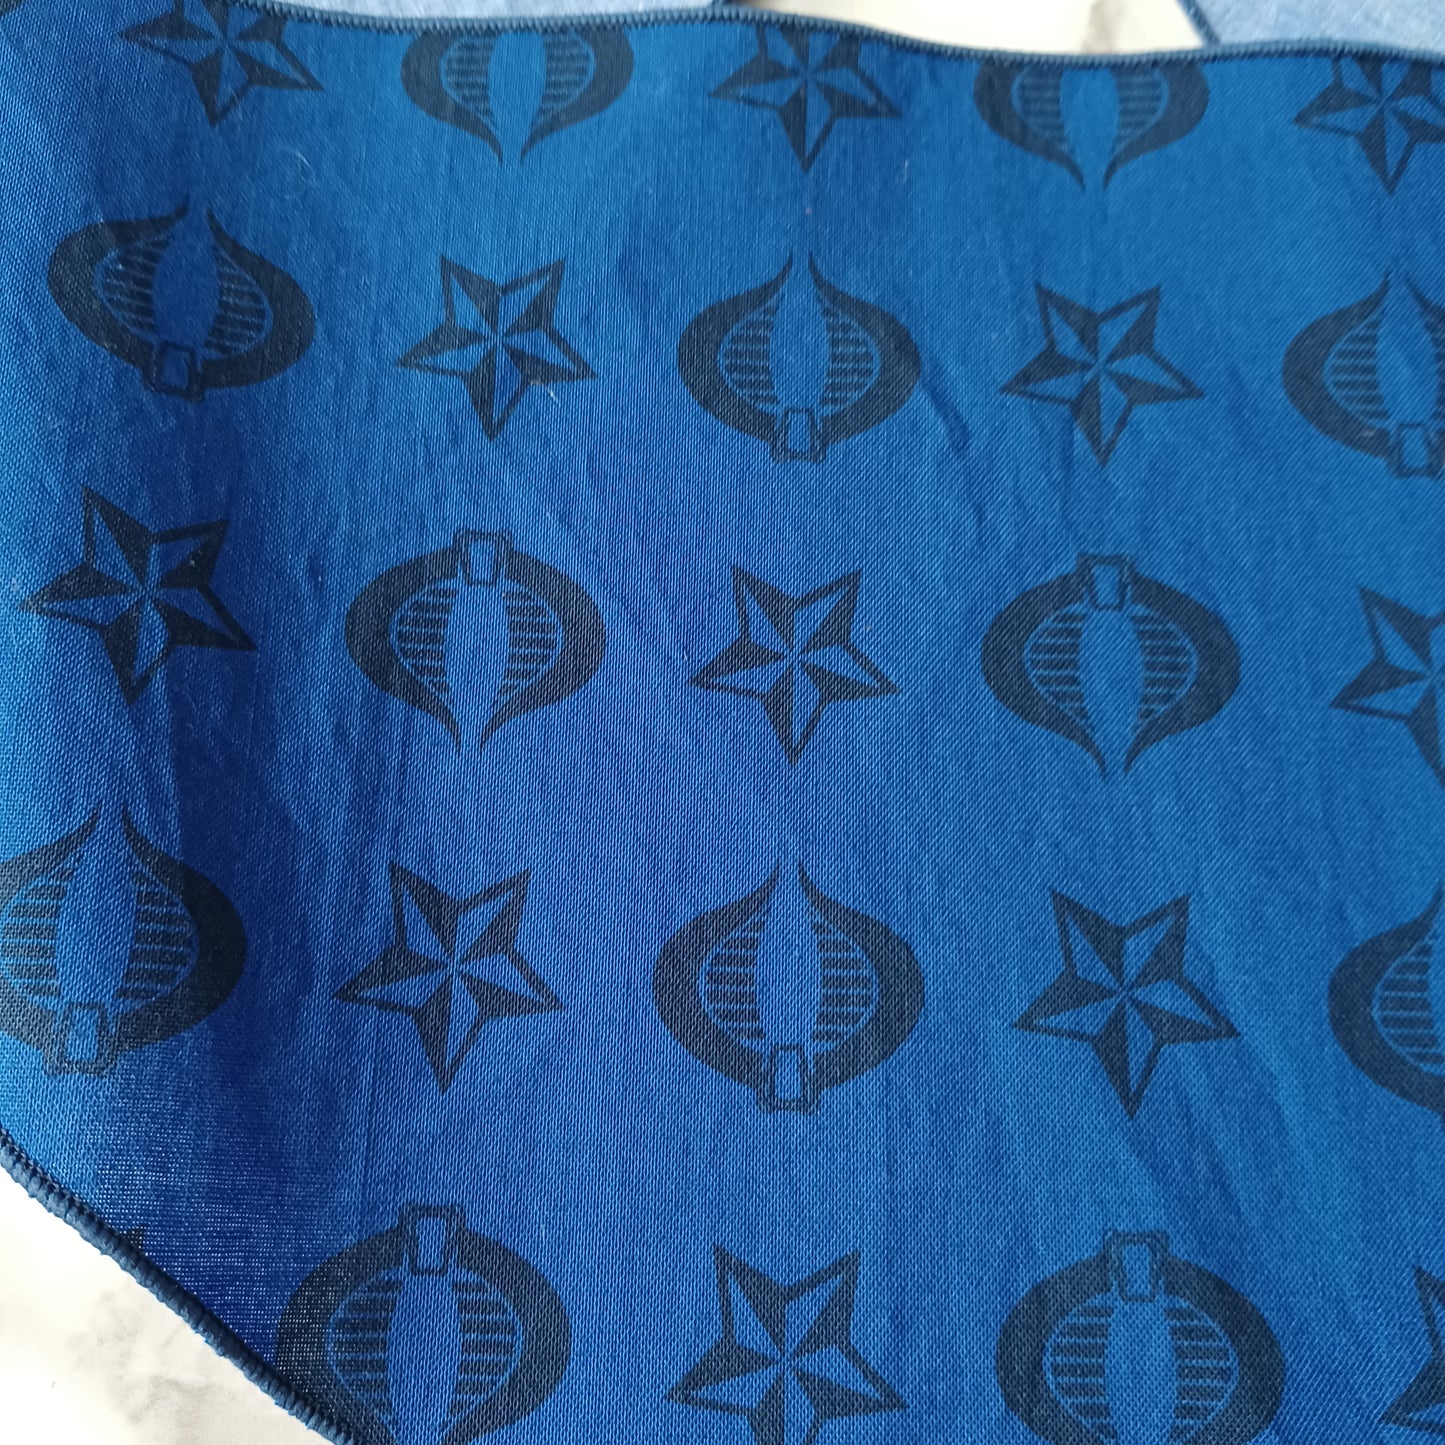 Bavoir-foulard pour bébé-Bleu avec étoiles et cobras noirs/Baby bib-Scarf-Blue with black stars and cobras 0-36 mois